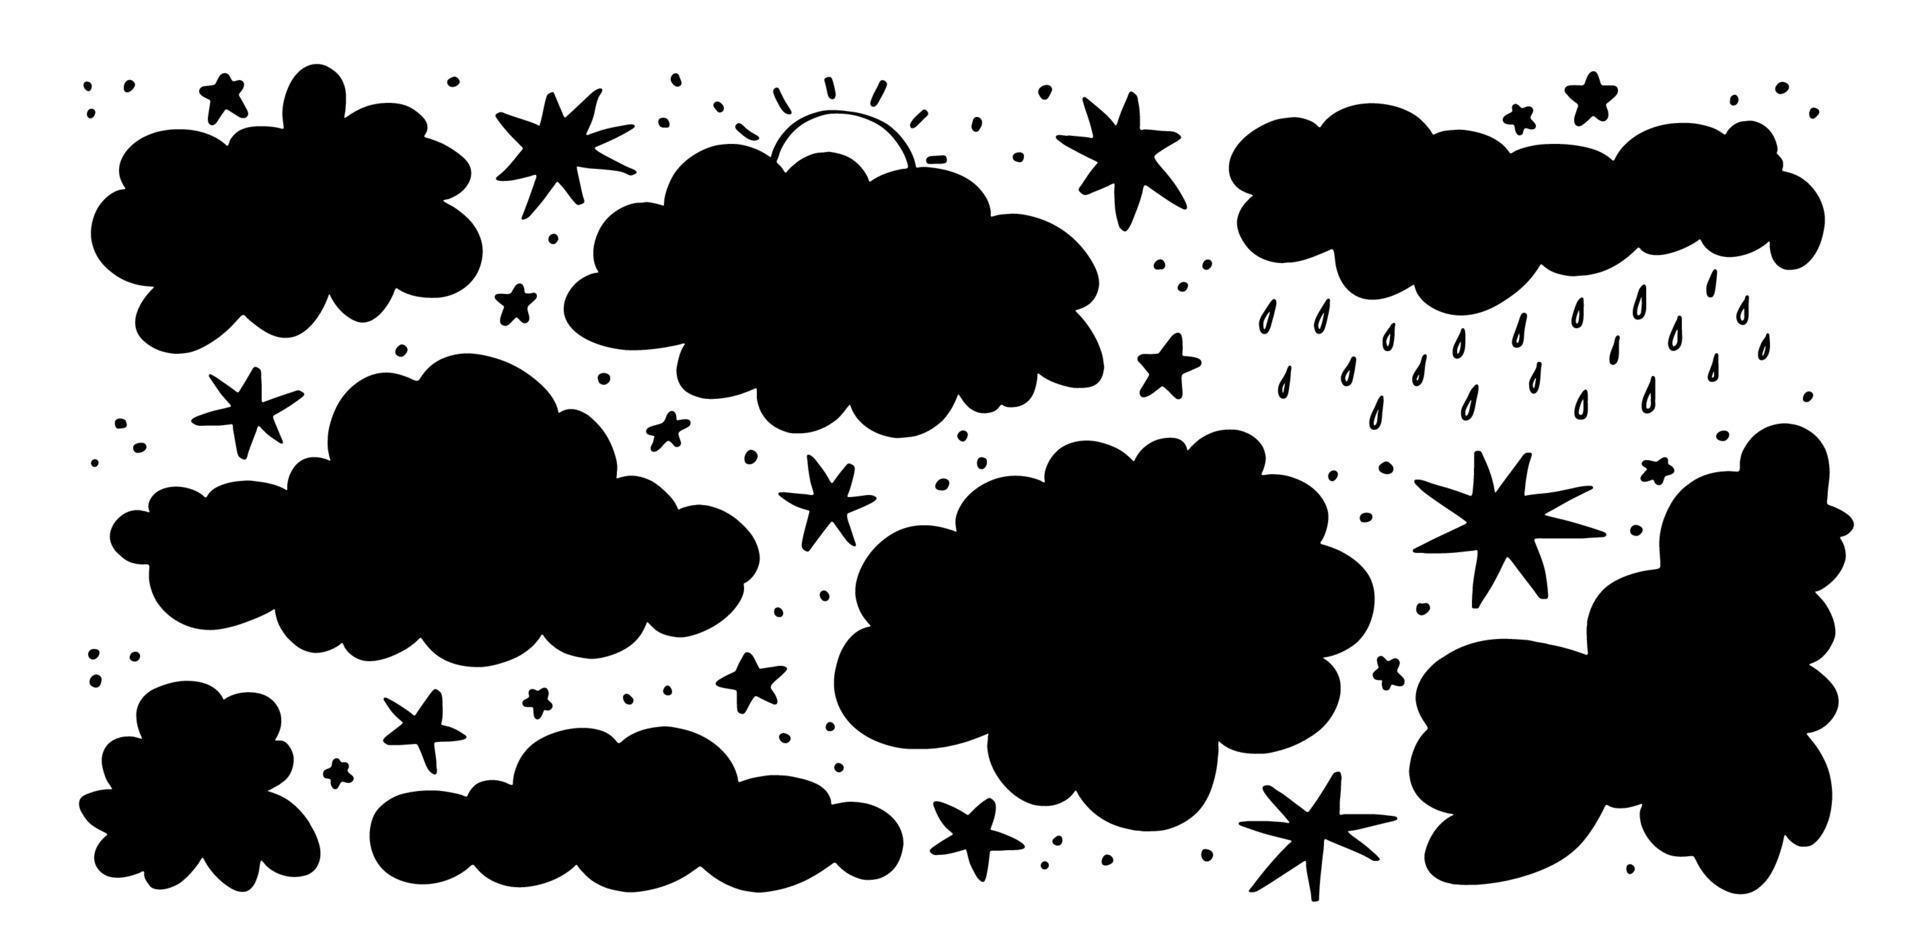 silhouettes de nuages. ensemble d'étoiles de doodle, de pluie et de gouttes de pluie. nuages orageux, temps nuageux. illustration vectorielle de silhouettes de ciel dessinés à la main sur fond blanc. vecteur